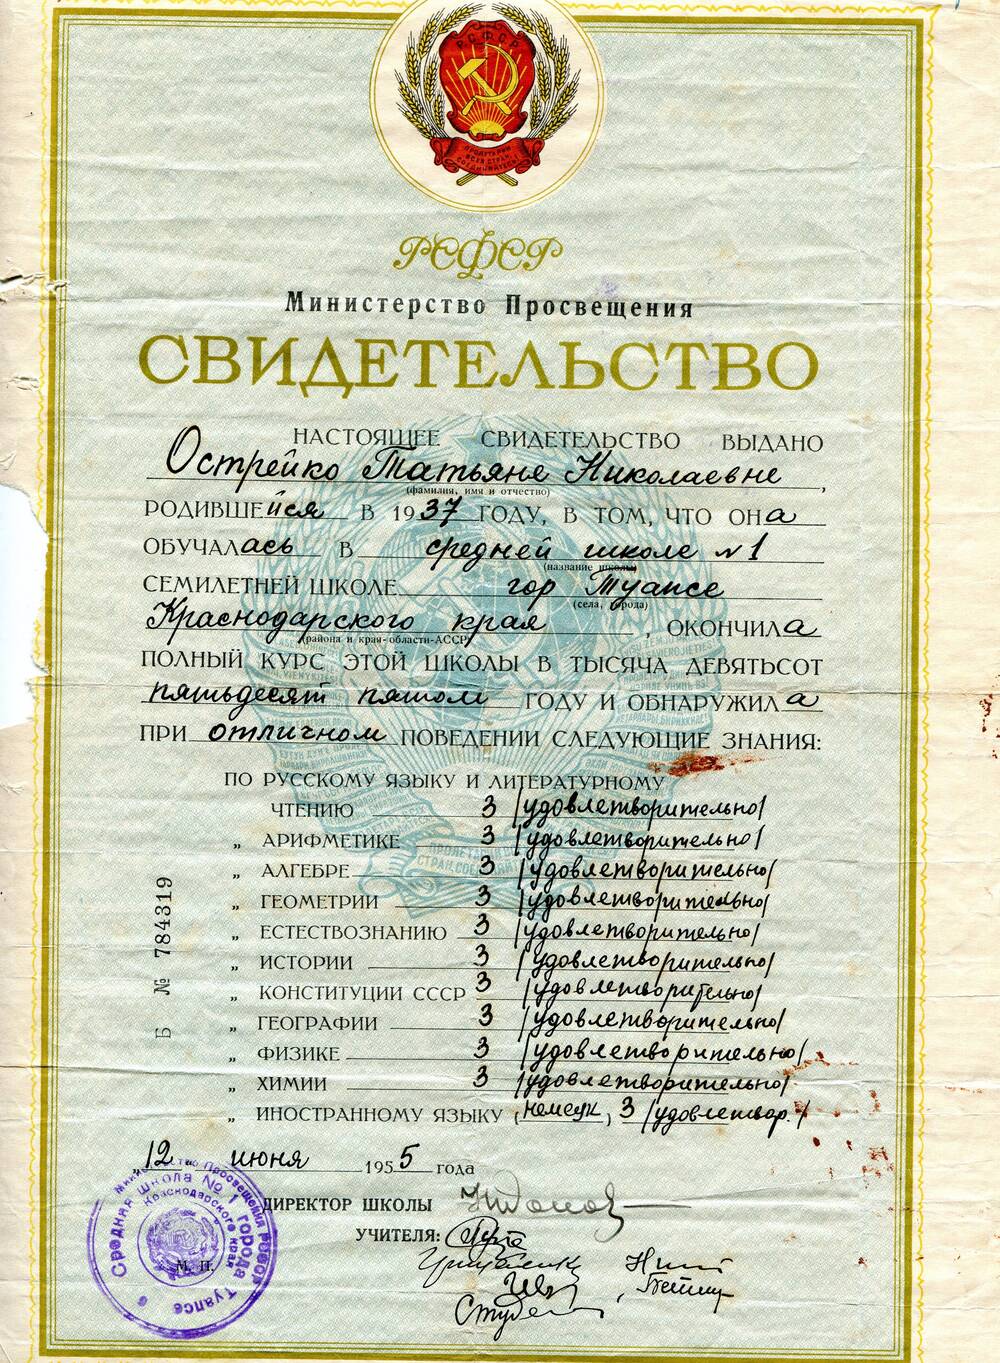 Свидетельство Б № 784319 выдано Острейко Татьяне Николаевне, родившейся в 1937 году, об окончании средней школы № 1 города Туапсе Краснодарского края.